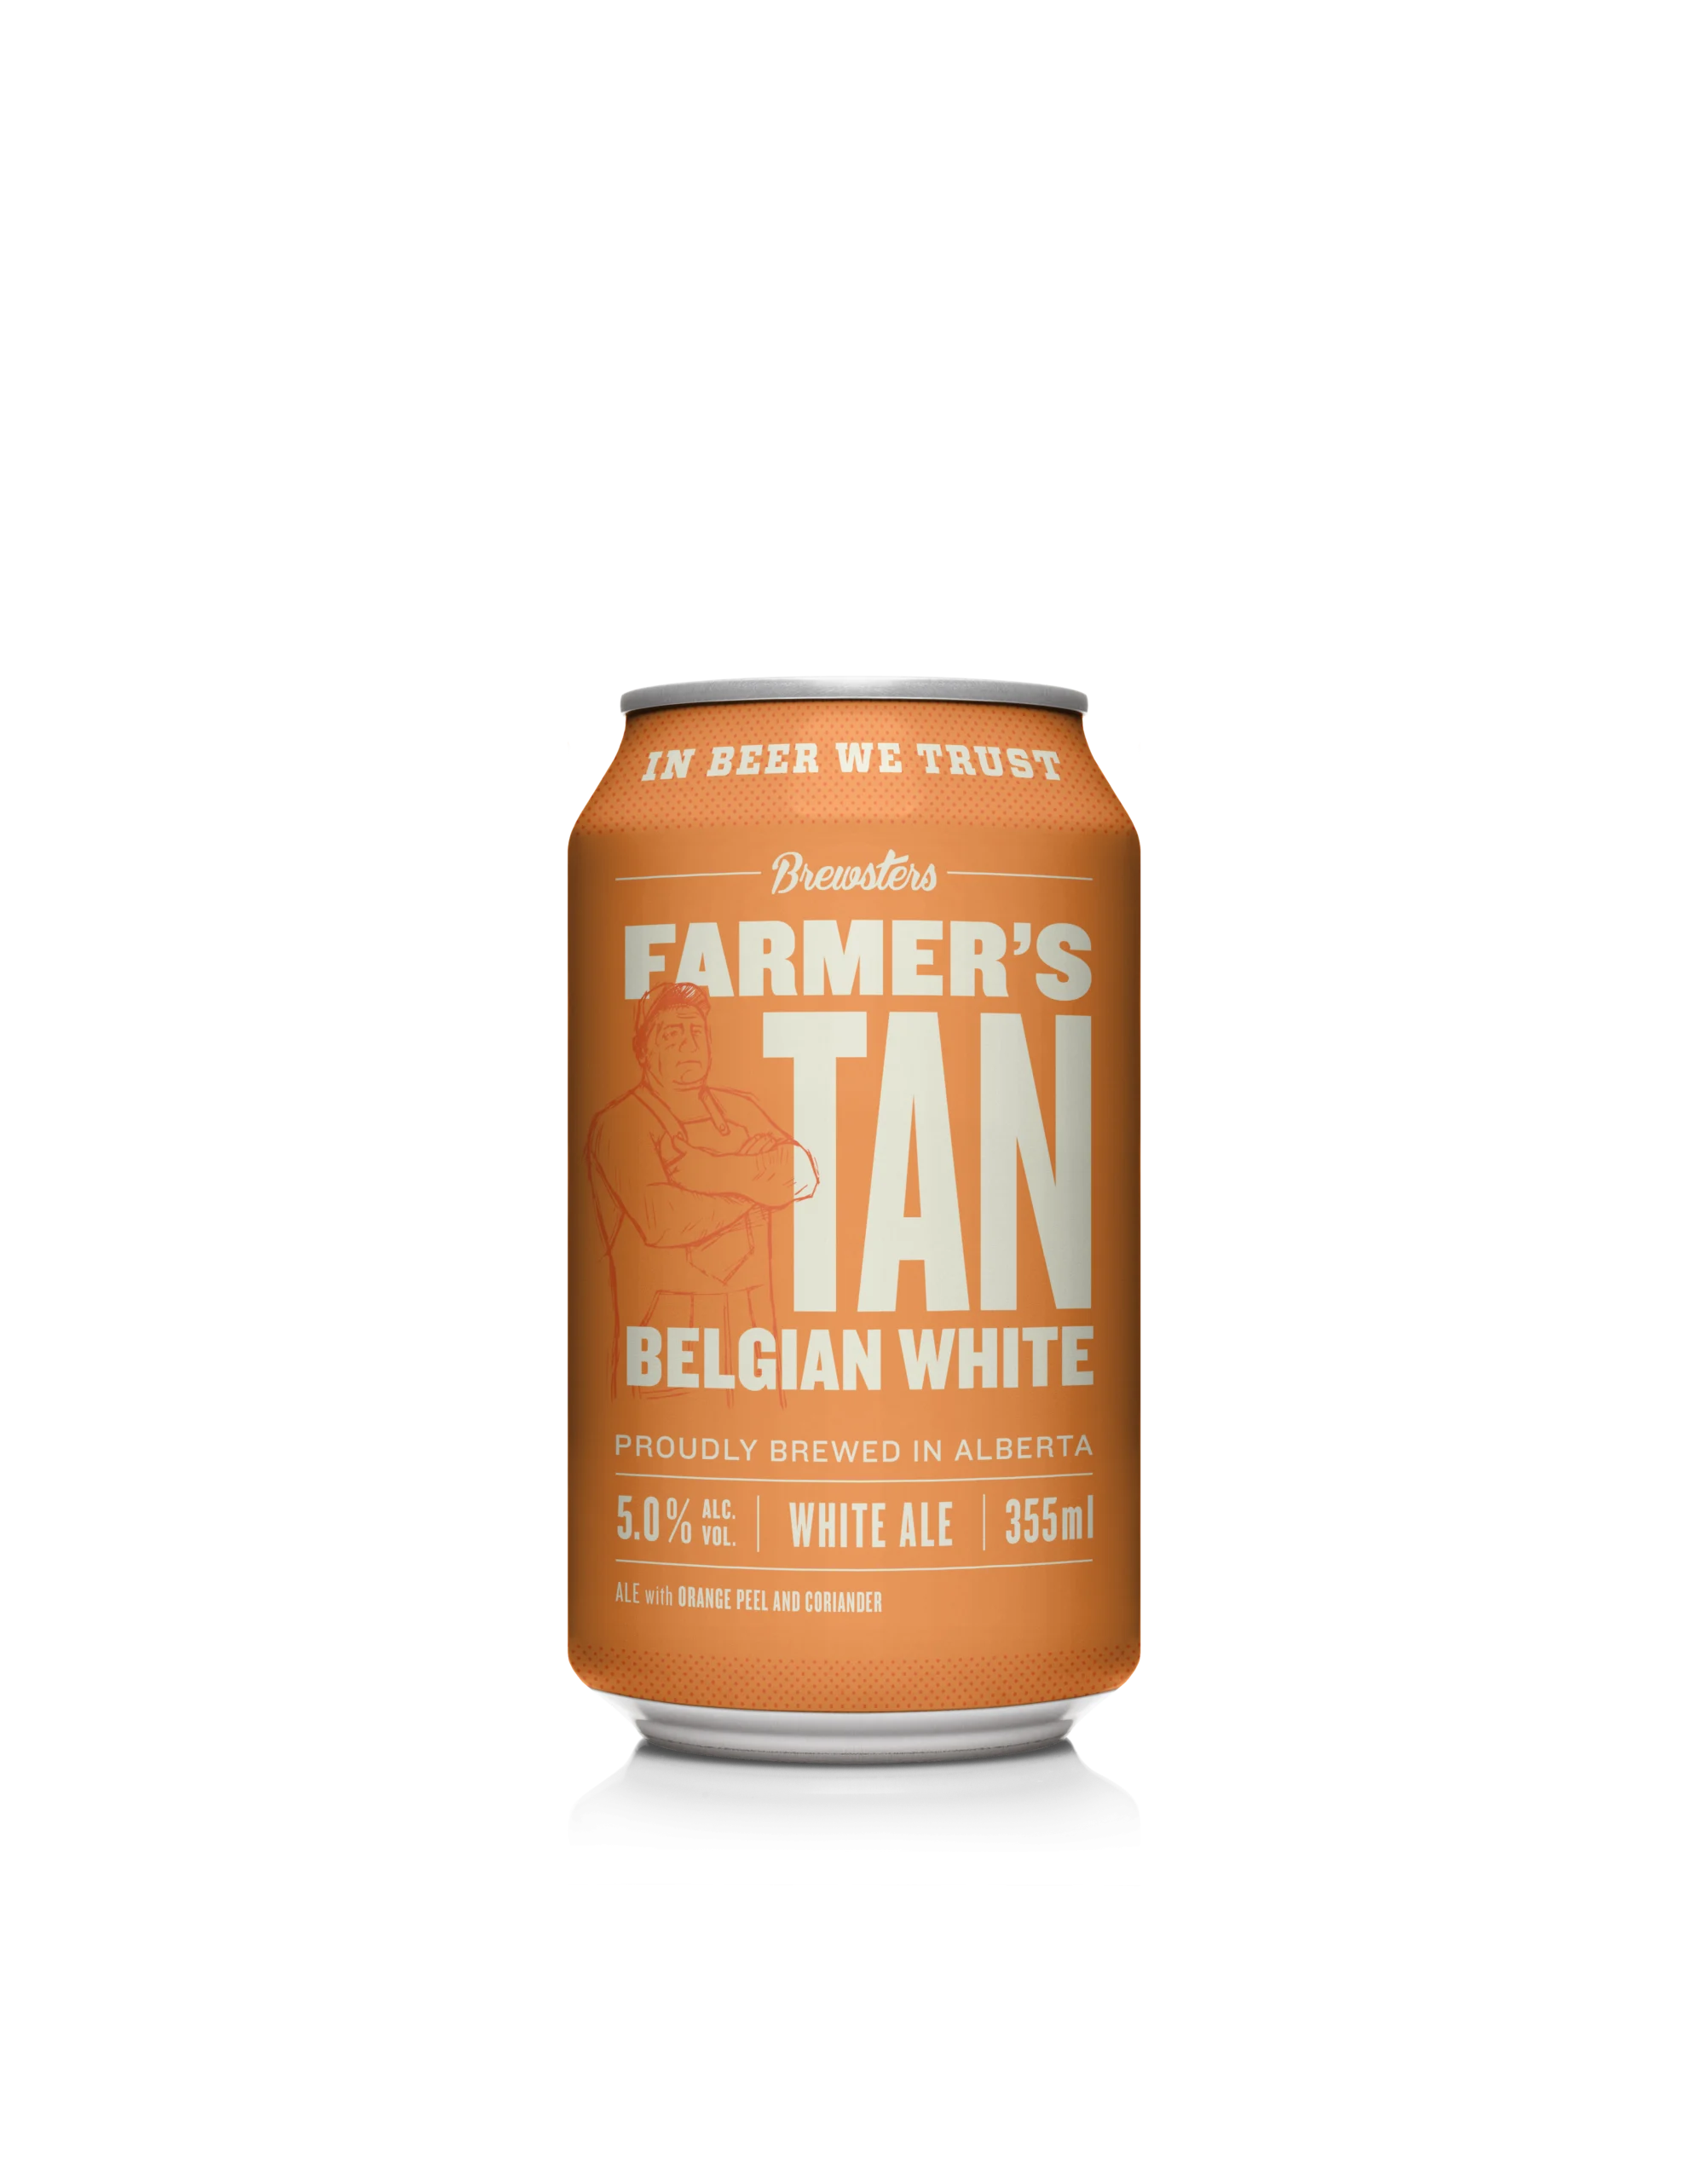 Farmers tan beer can render